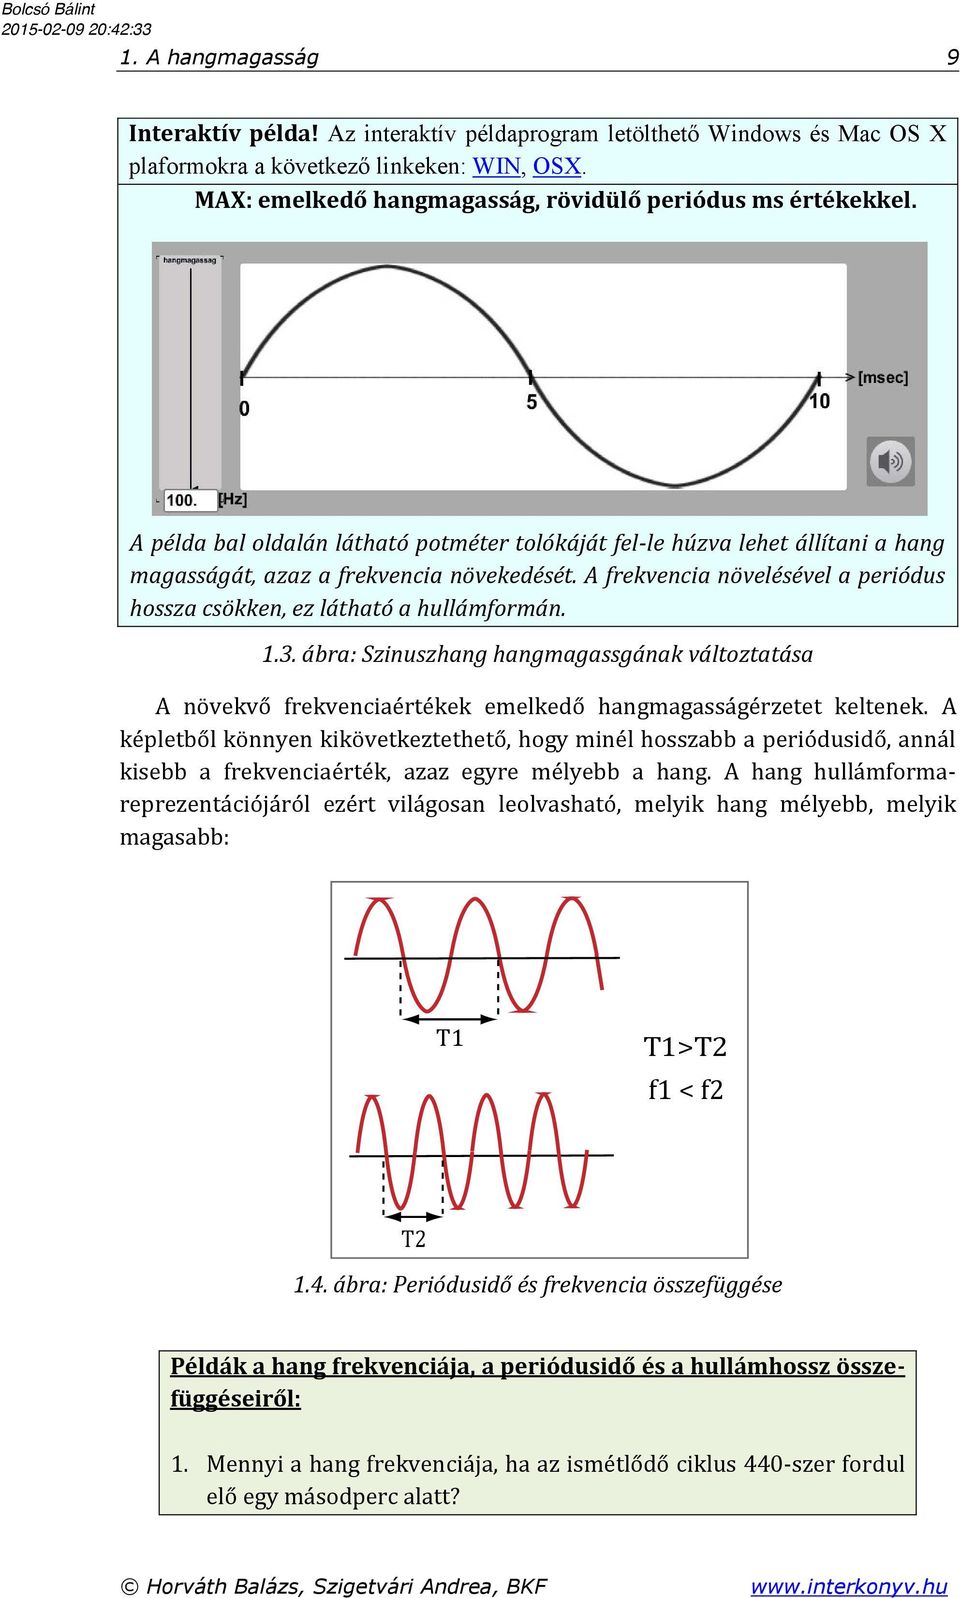 A frekvencia növelésével a periódus hossza csökken, ez látható a hullámformán. 1.3. ábra: Szinuszhang hangmagassgának változtatása A növekvő frekvenciaértékek emelkedő hangmagasságérzetet keltenek.